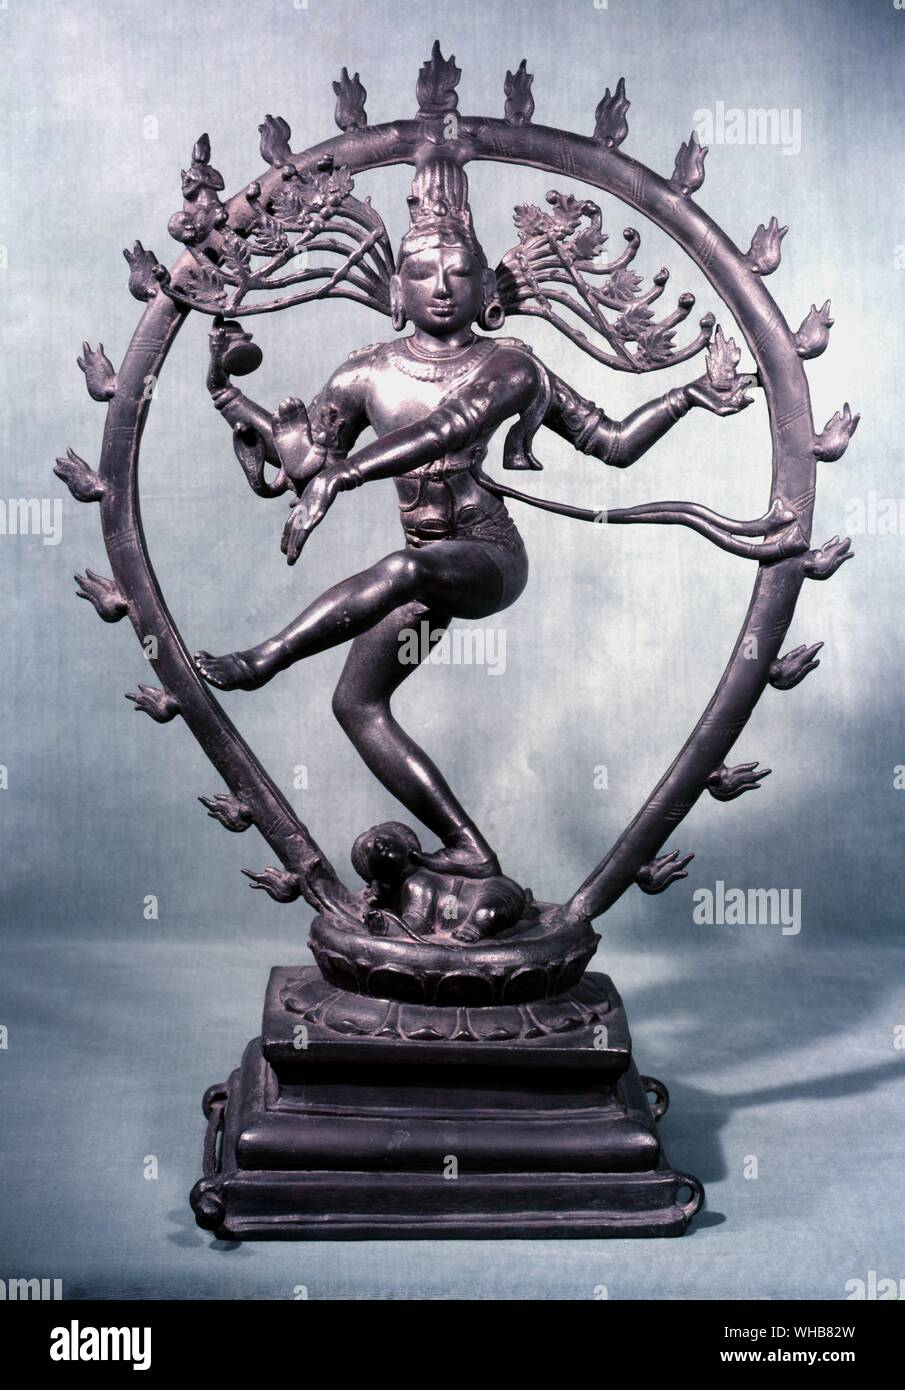 La danse de Shiva - Shiva est considéré comme la divinité suprême dans une dénomination, Shaivism de l'hindouisme. . Banque D'Images